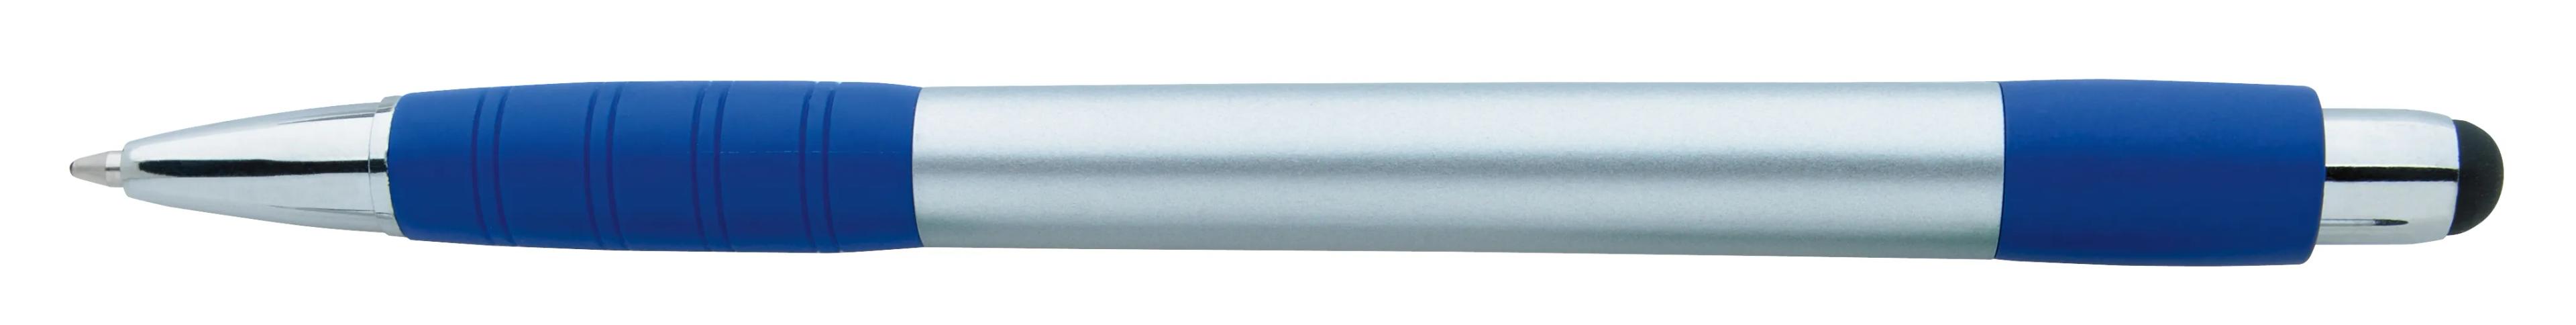 Silver Element Stylus Pen 4 of 53